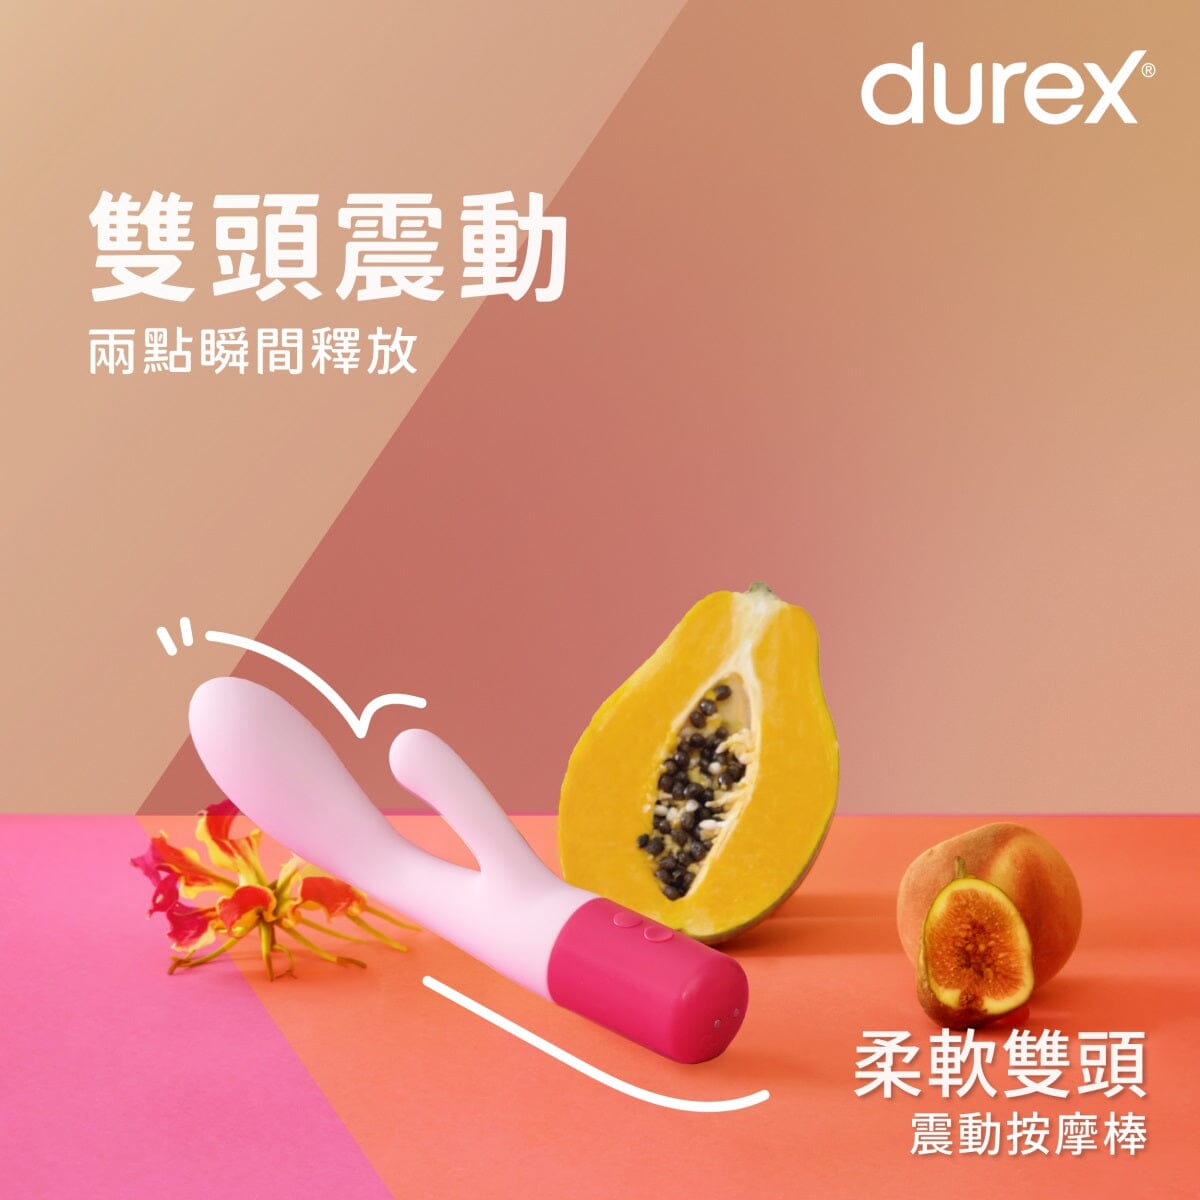 DUREX 柔軟雙頭震動按摩棒 購買